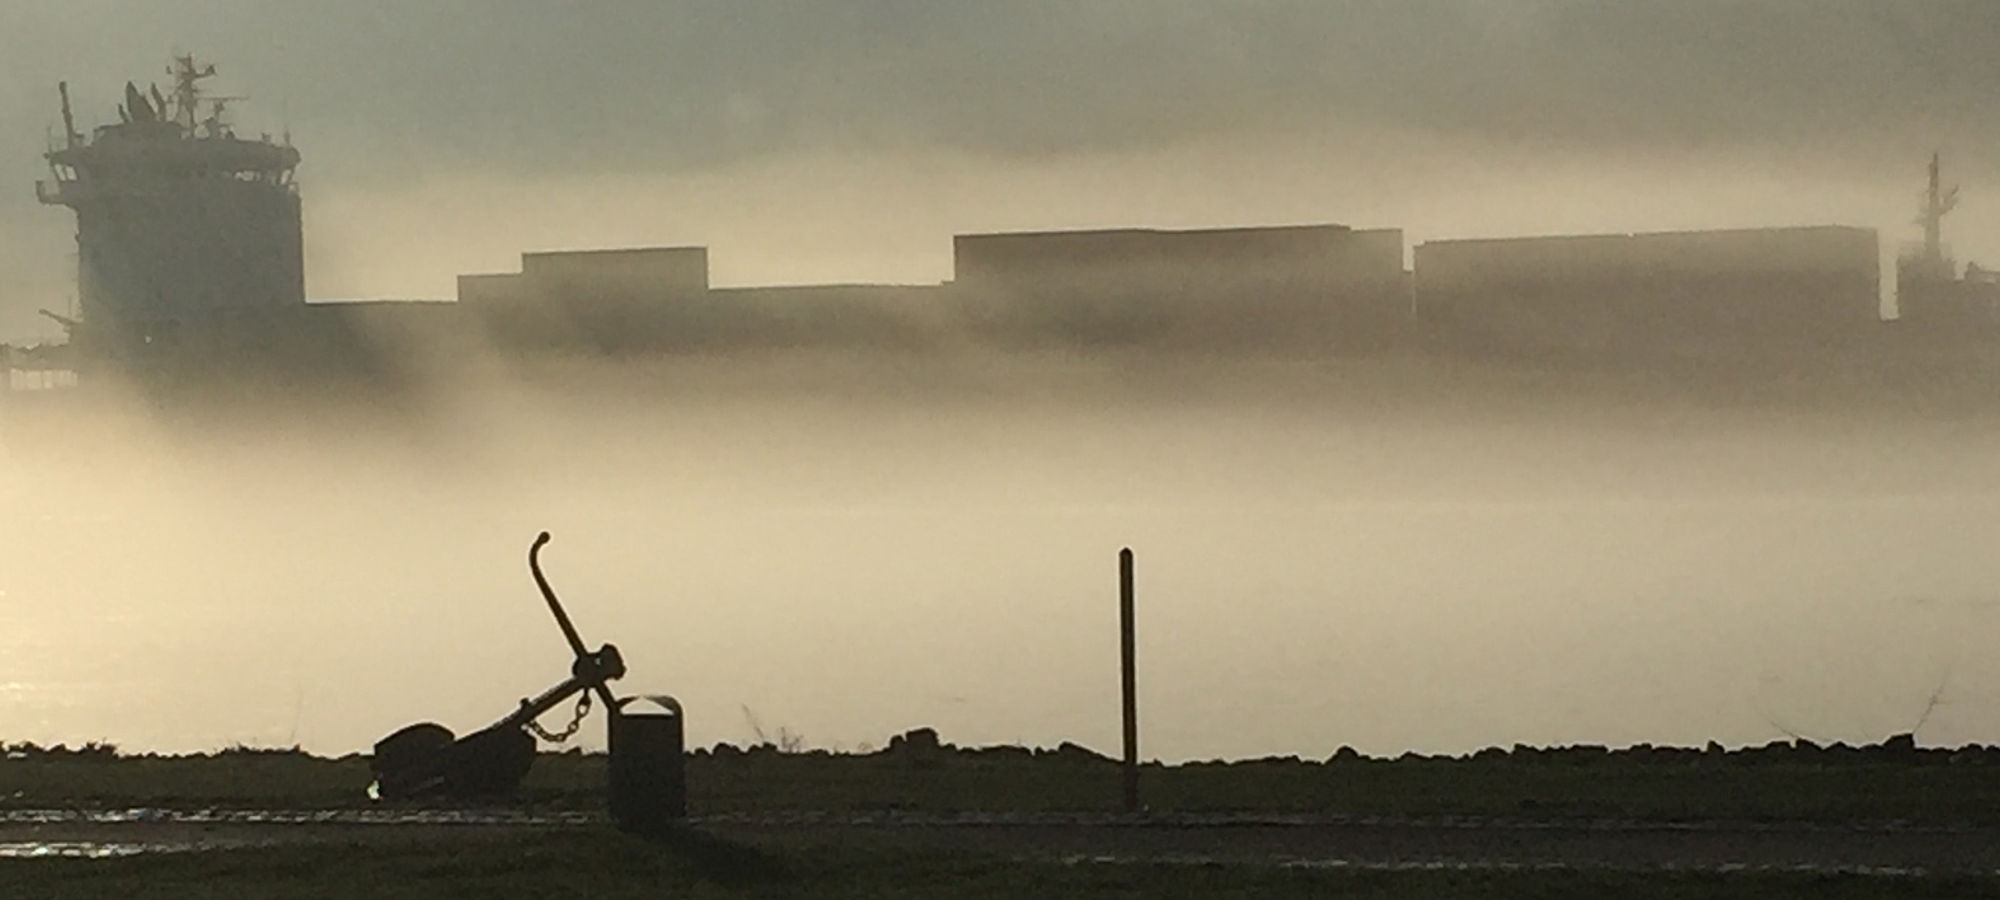 Ein kleines Containerschiff schiebt sich vor Schulau durch den Nebel. Zu sehen ist auch der Anker am Ufer.